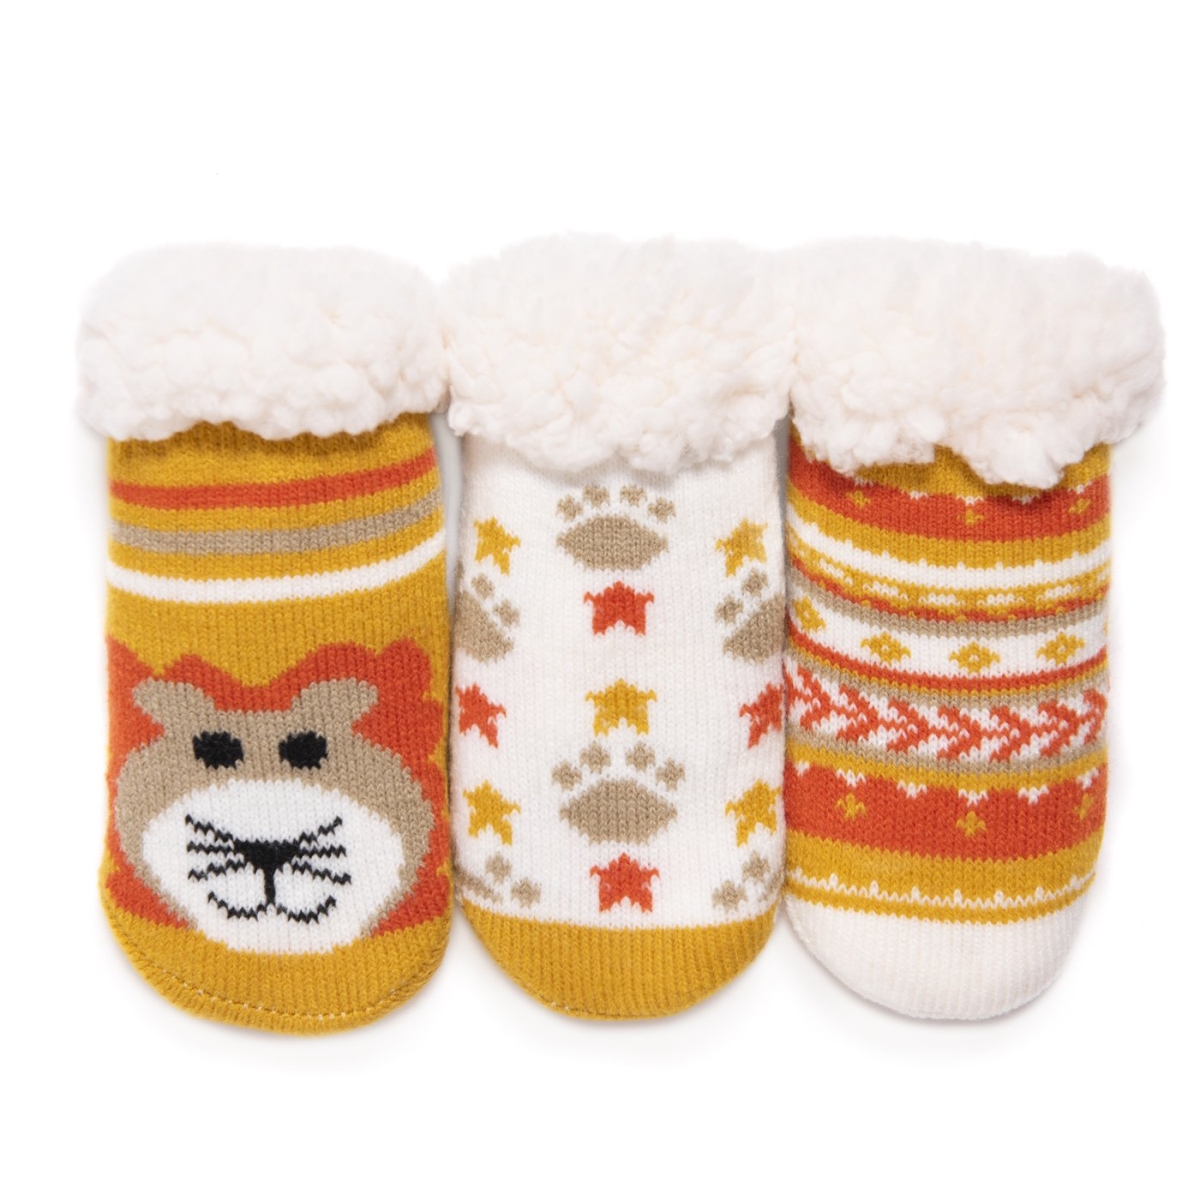 0023012710-inf6 Babys Cabin Socks, Infant 6 - Pack Of 3